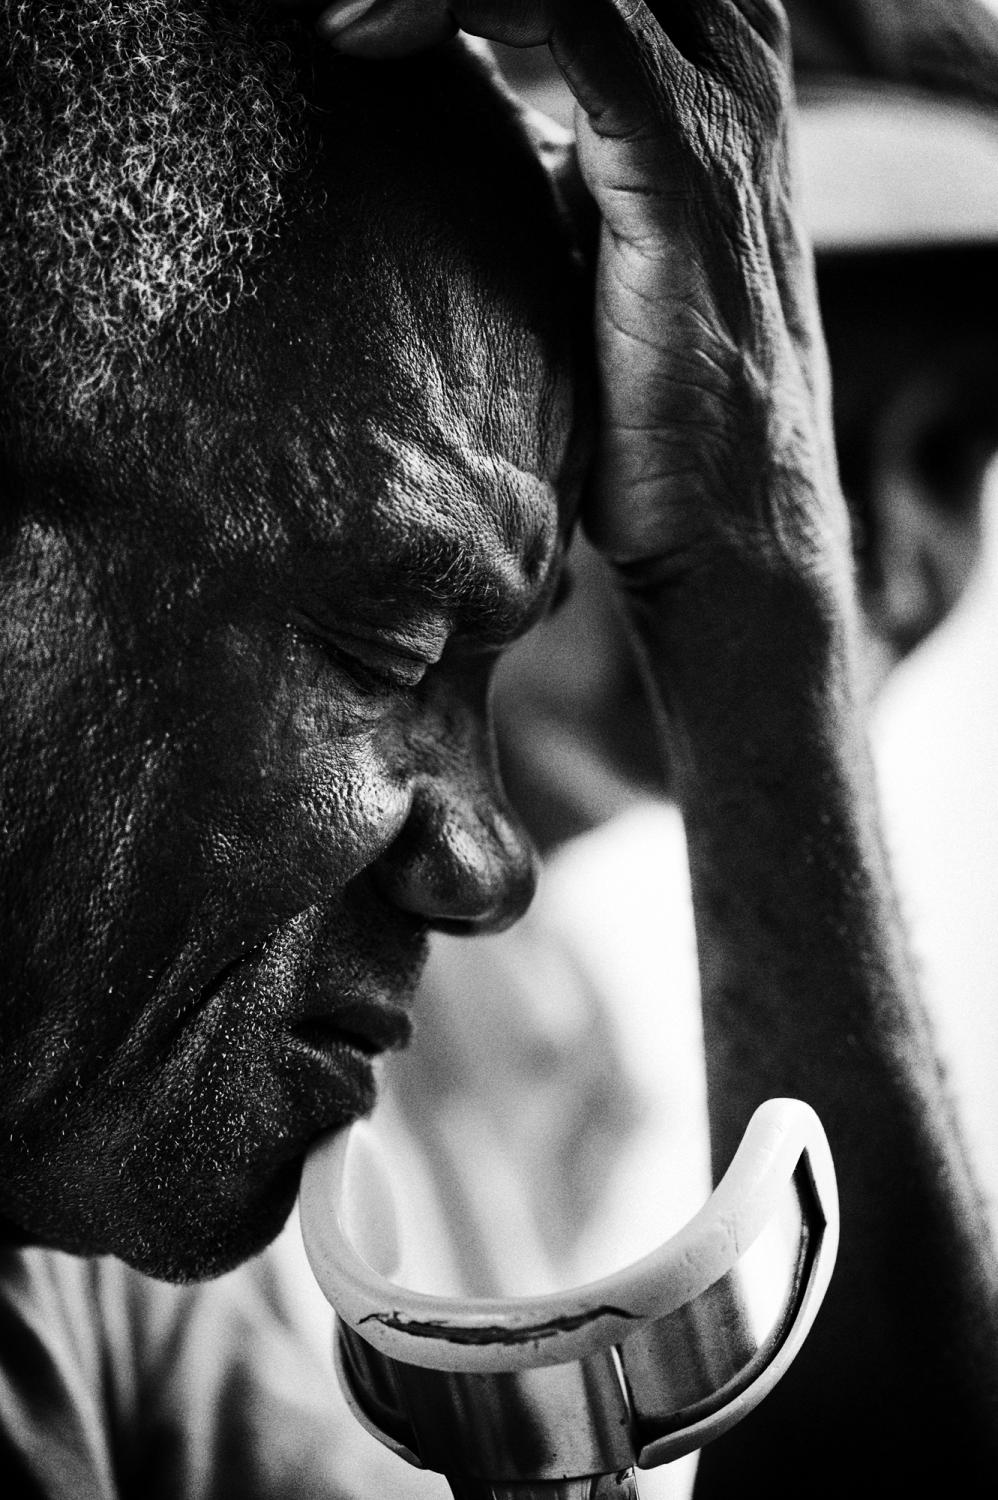 Hospice/ Haiti - Petit Guave, Haiti.
June 2010.
Portrait of an inmate at...